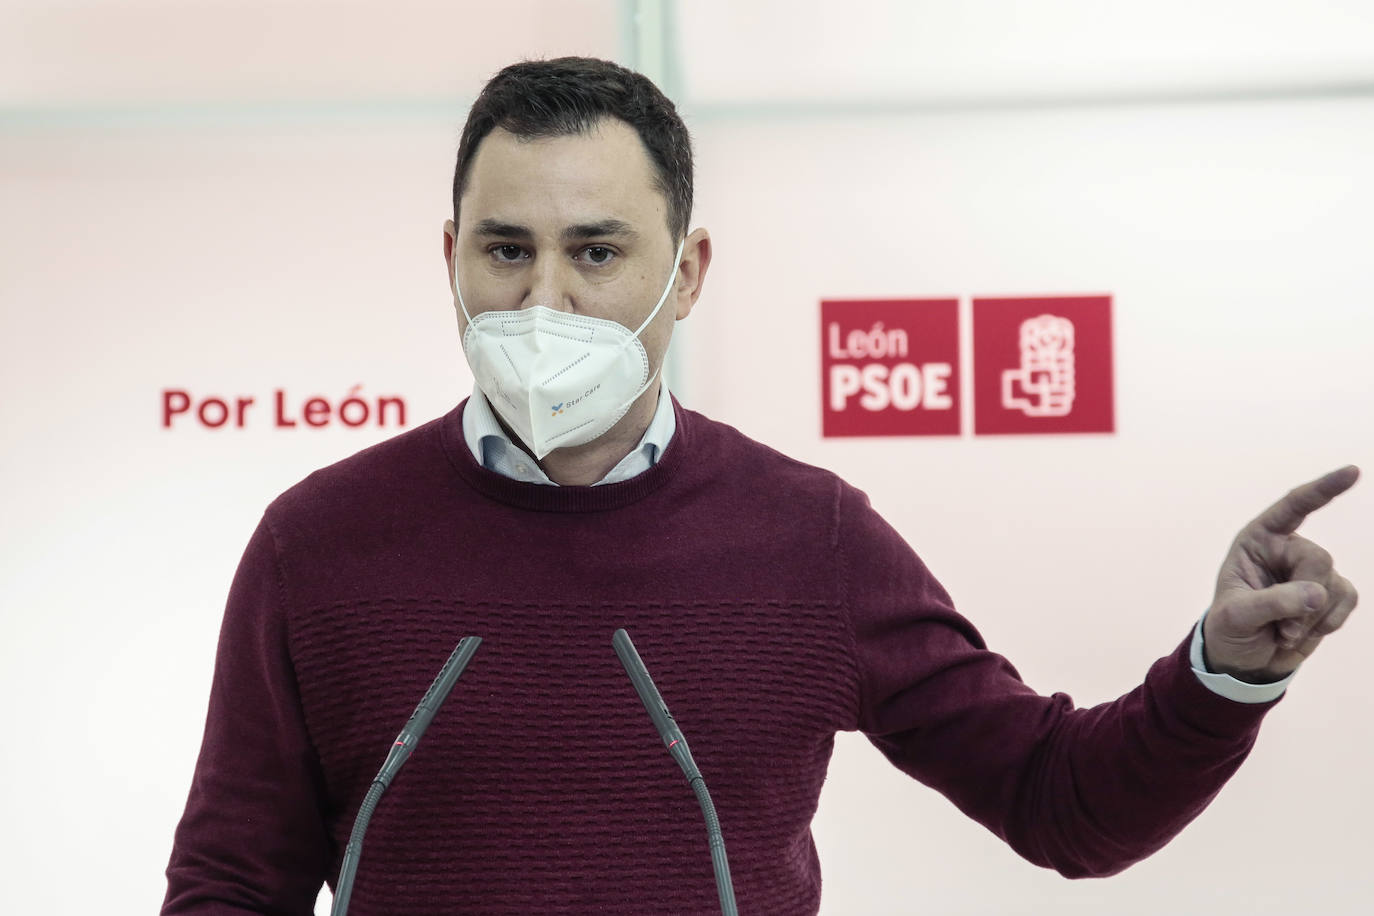 El secretario provincial del PSOE en León, Javier Alfonso Cendón, afirma que el consejero de Fomento y Medio Ambiente no contesta a una solicitud pendiente